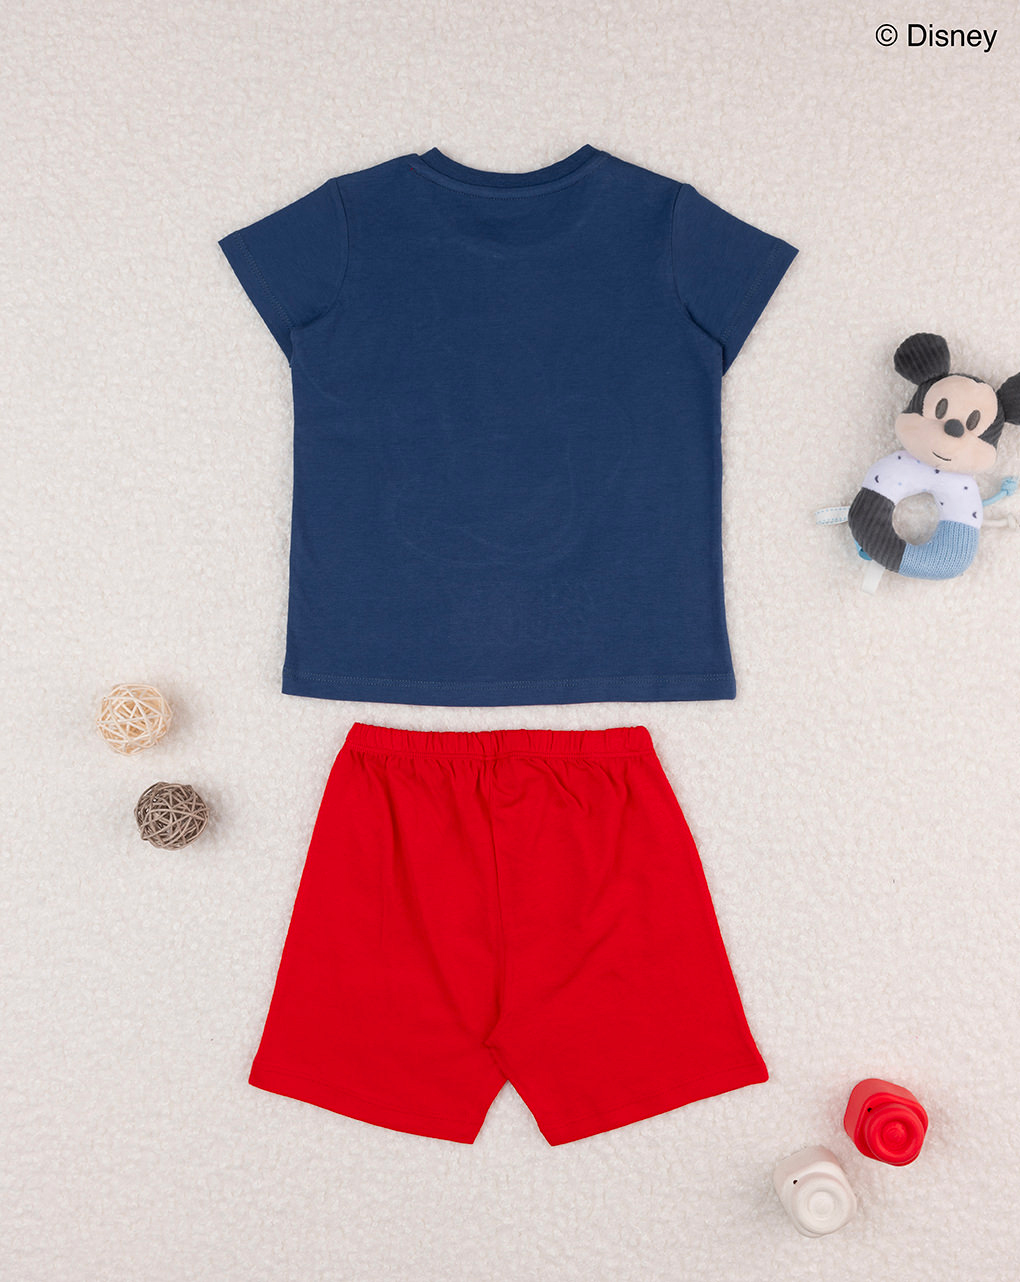 βρεφική πιτζάμα μπλε/κόκκινη mickey για αγόρι - Prénatal